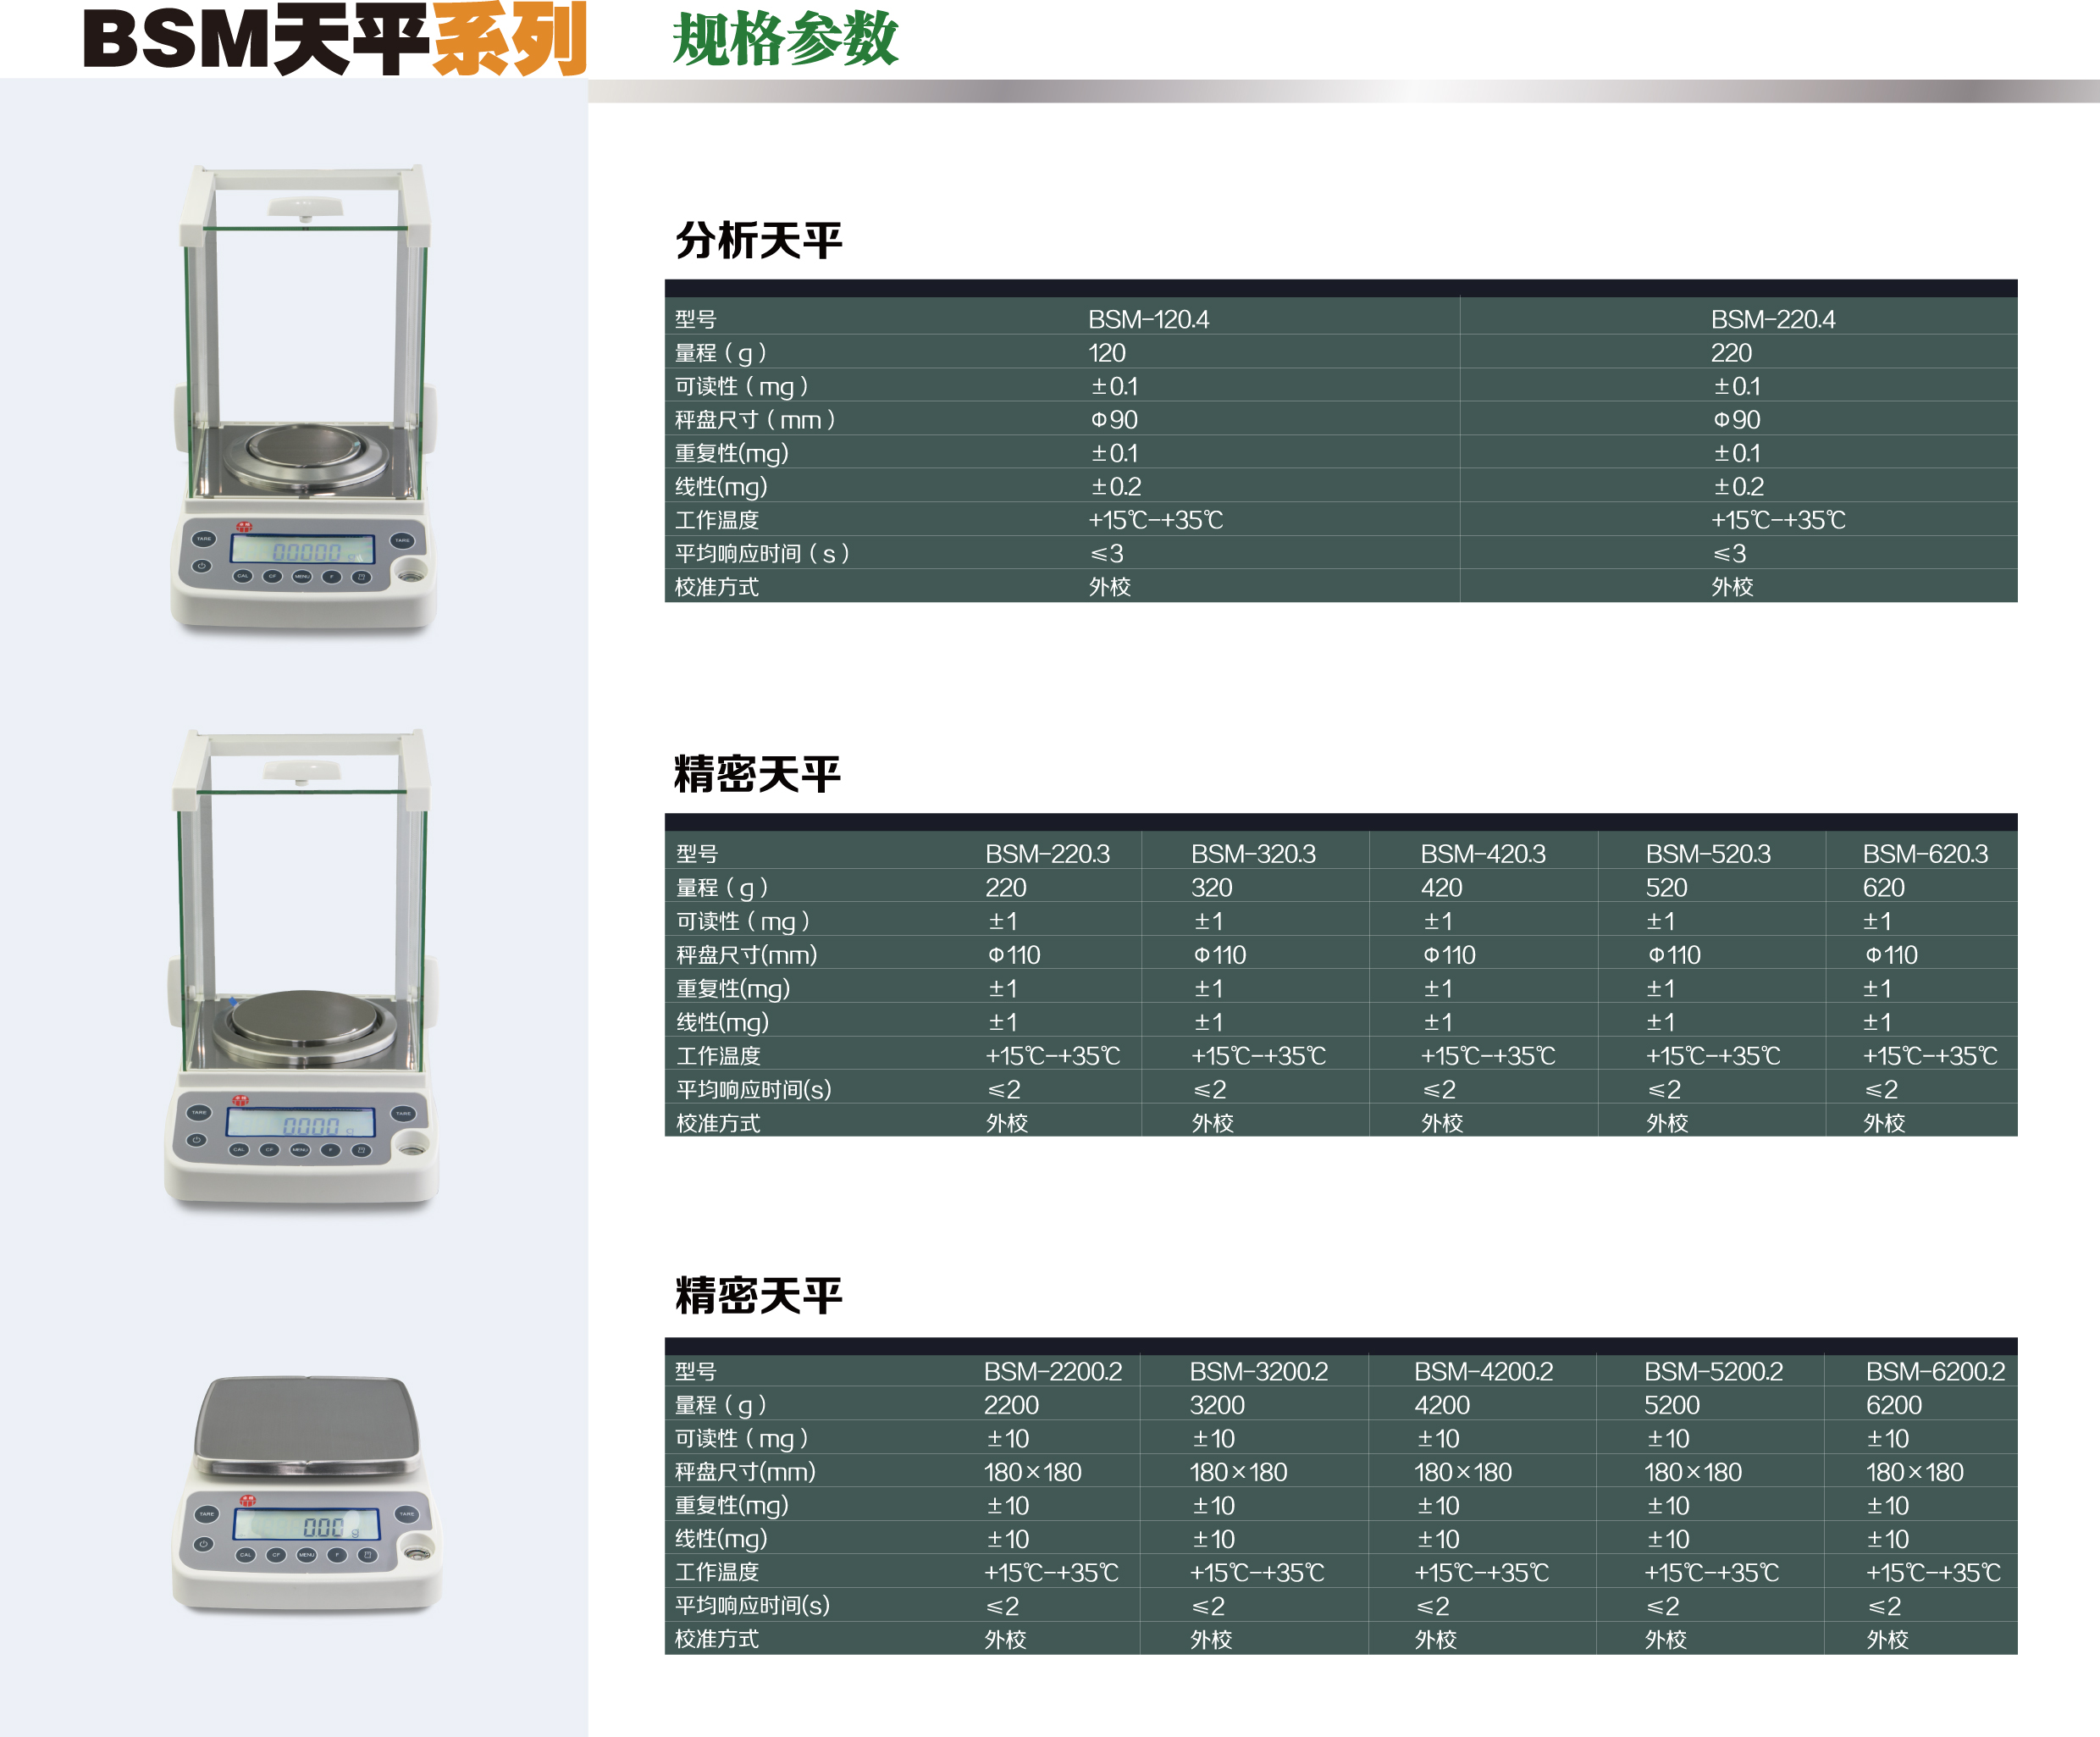 上海卓精电子科技有限公司精密天平BSM-5200.2